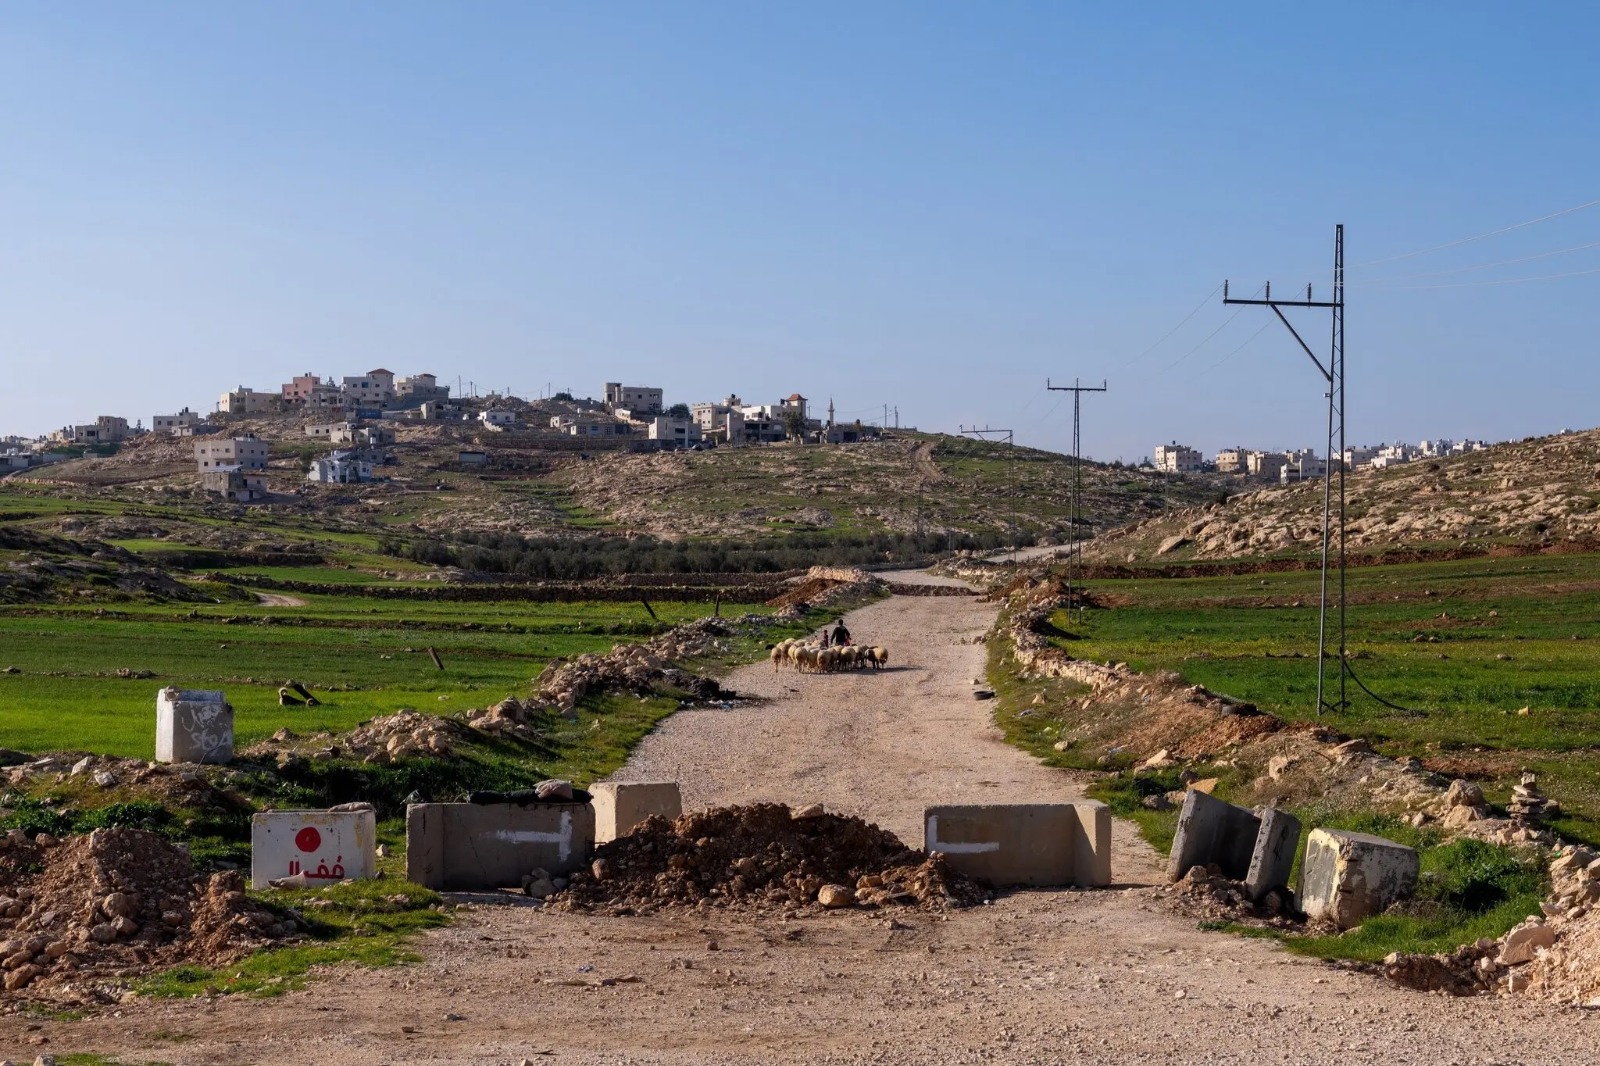 بعد 7 أكتوبر بدأ مستوطنون في إقامة حواجز طرق غير مصرح بها في العديد من المناطق في الضفة الغربية المحتلة